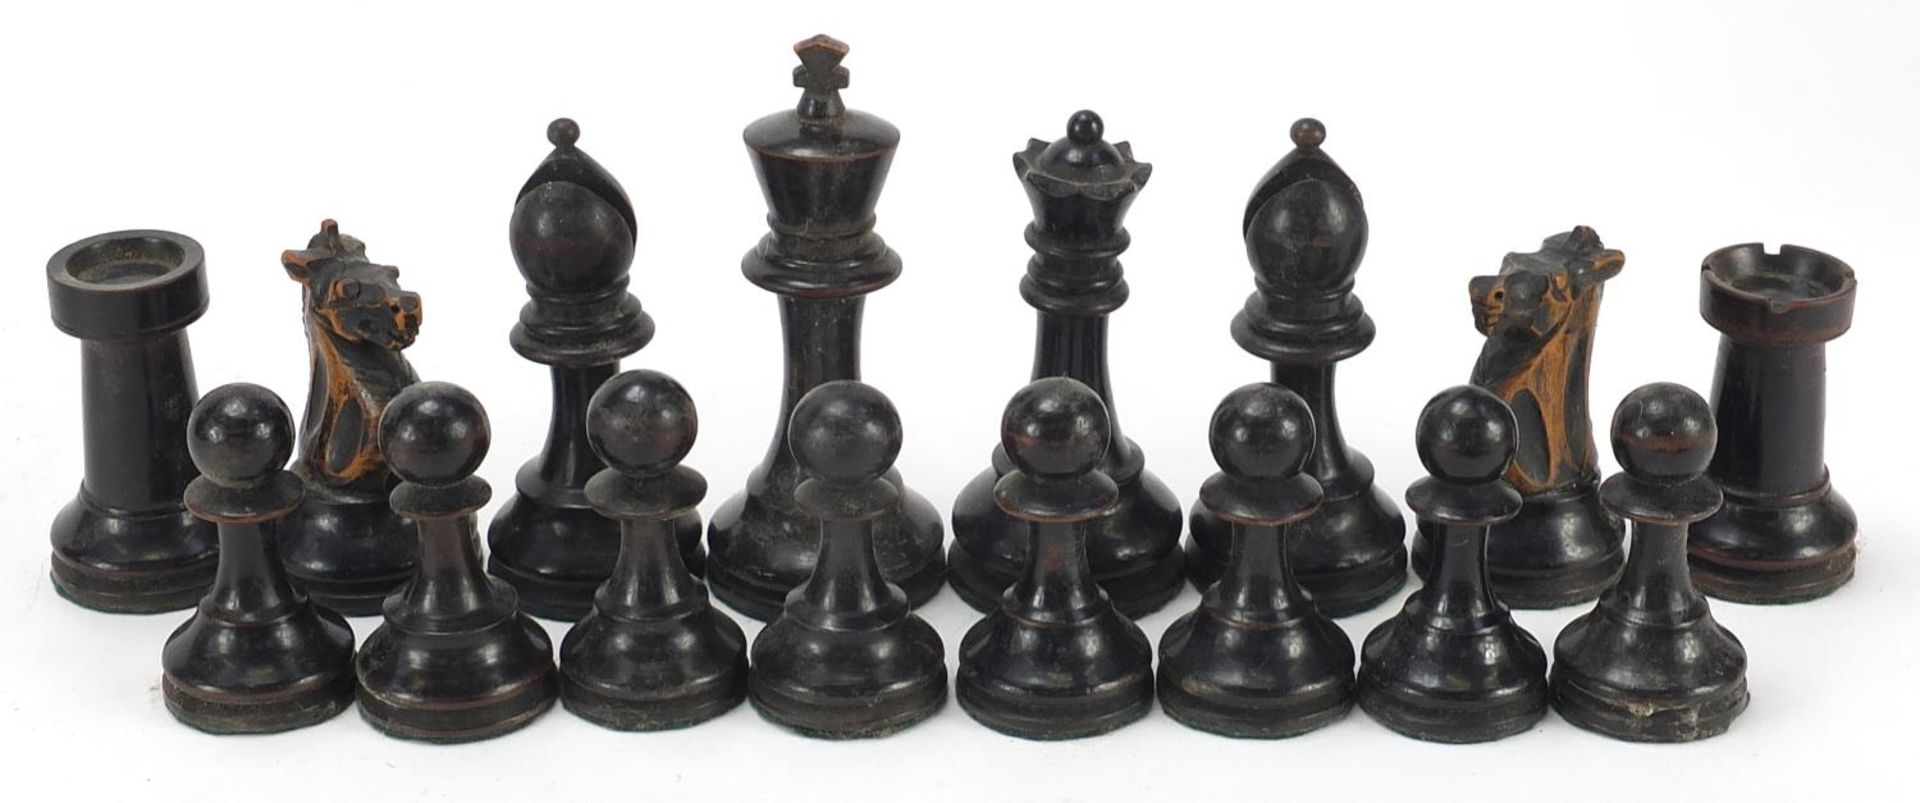 19th century boxwood and ebonised Staunton chess set, 10.5cm high - Image 3 of 9